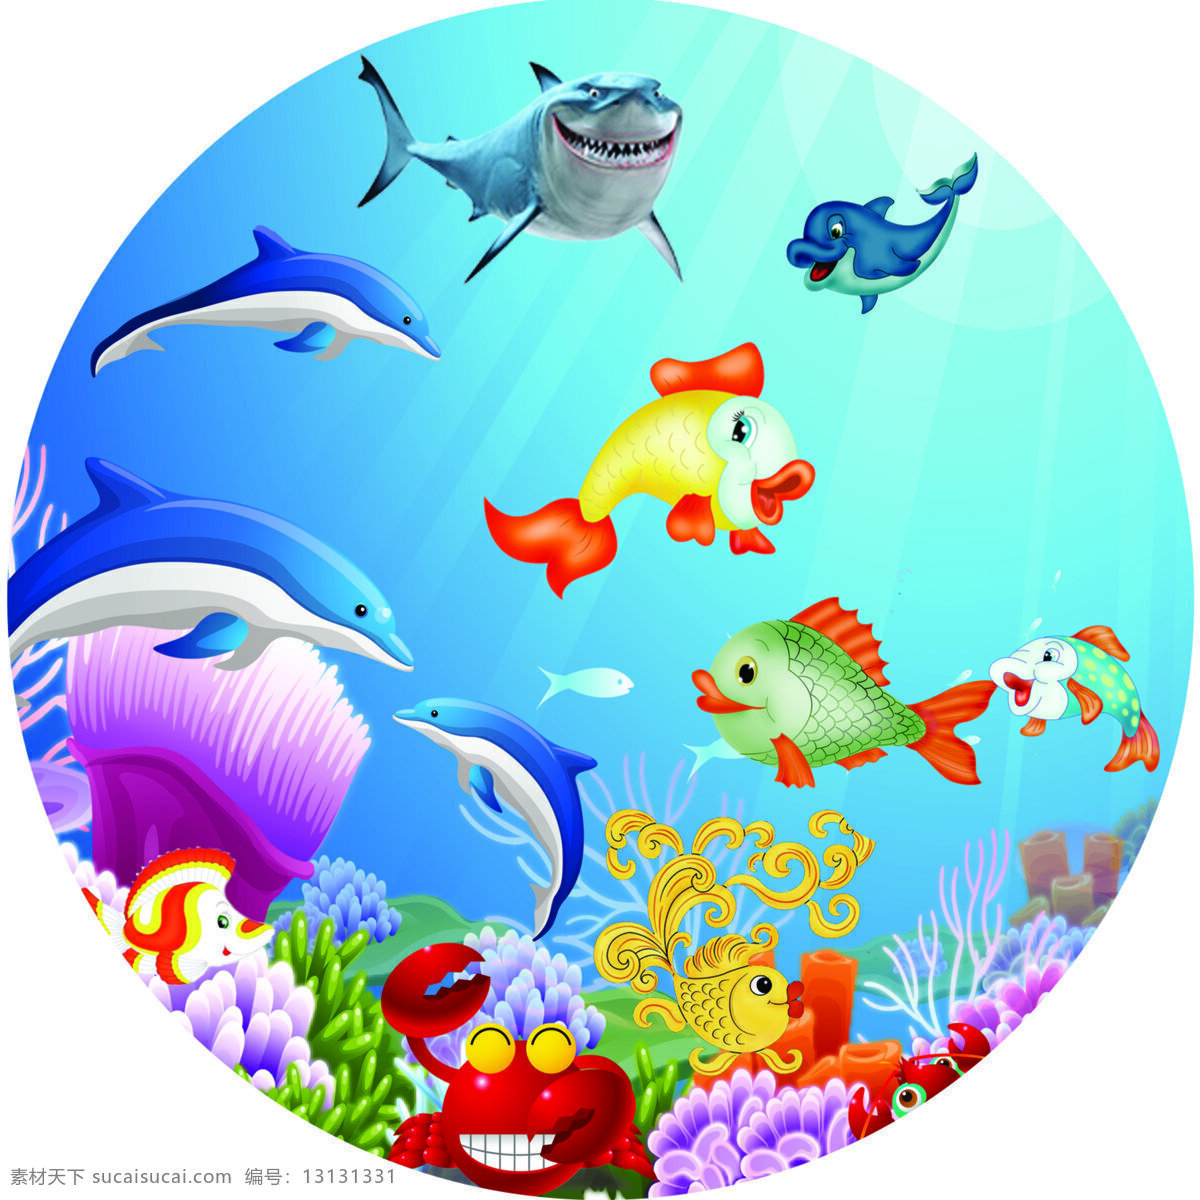 卡通海底世界 海底世界 墙绘 卡通鱼 原形图 海洋生物 生物世界